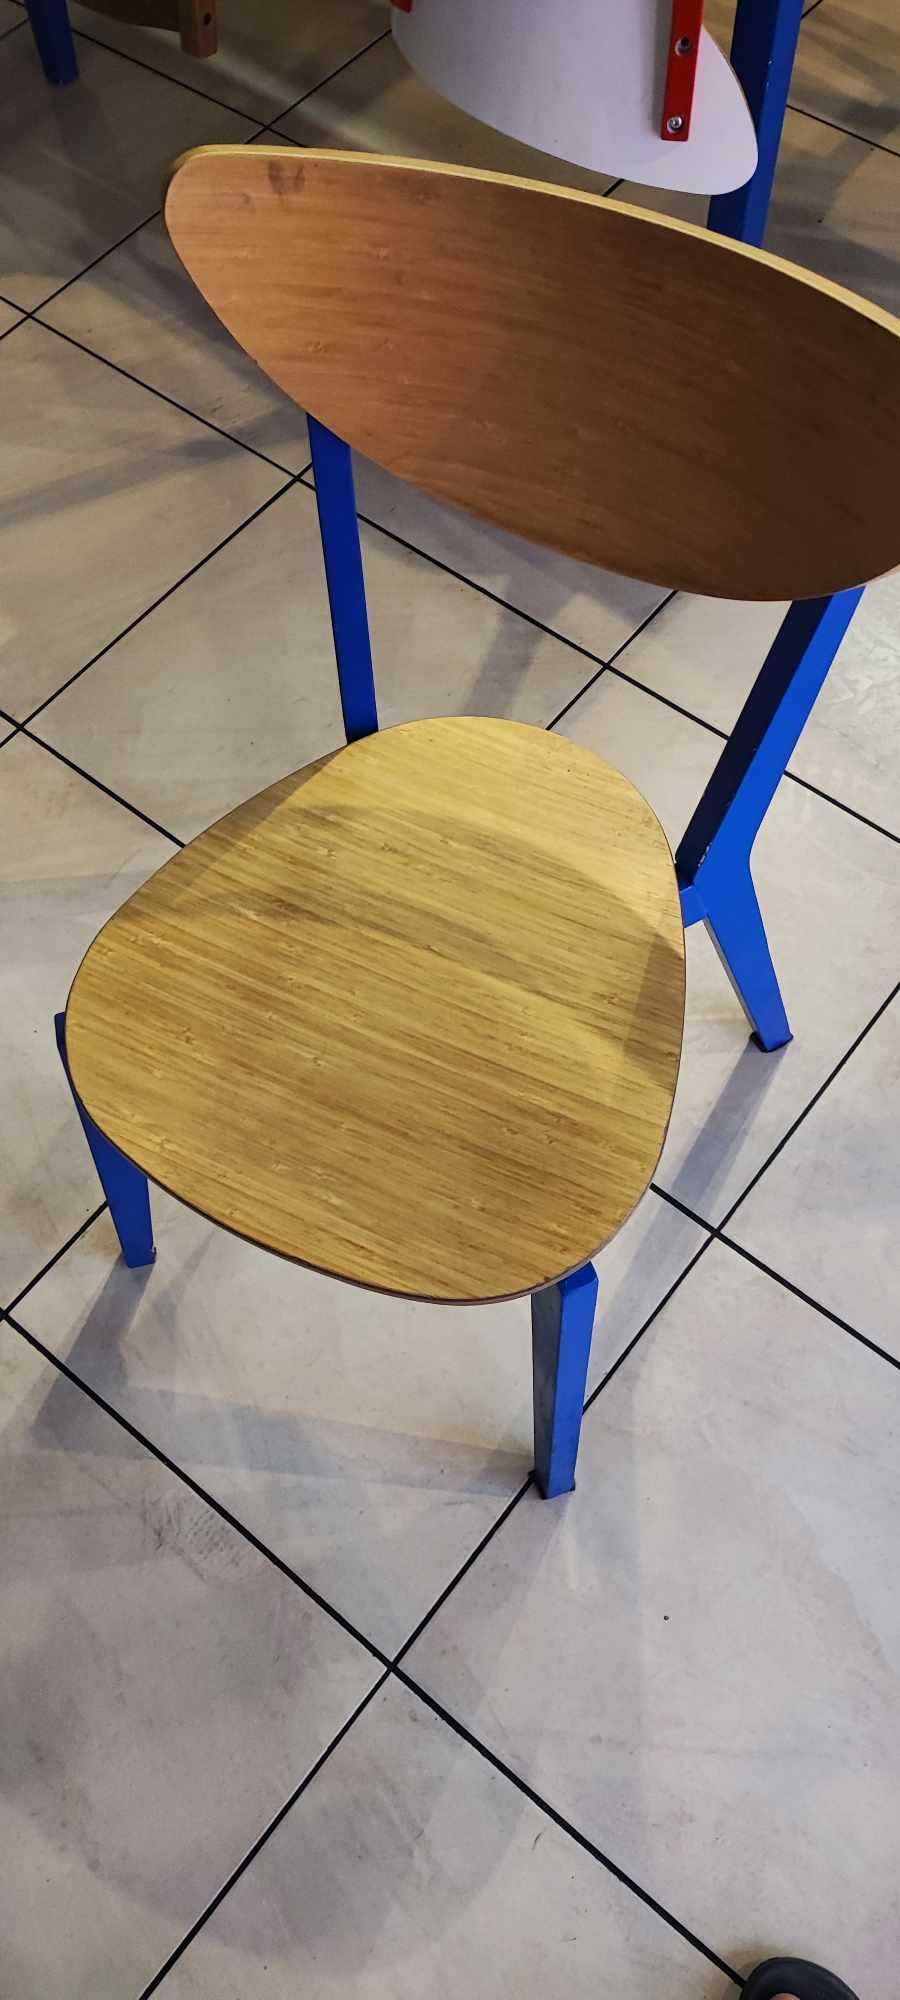 Krzesło Ikea używane kolor czerwony i niebieski